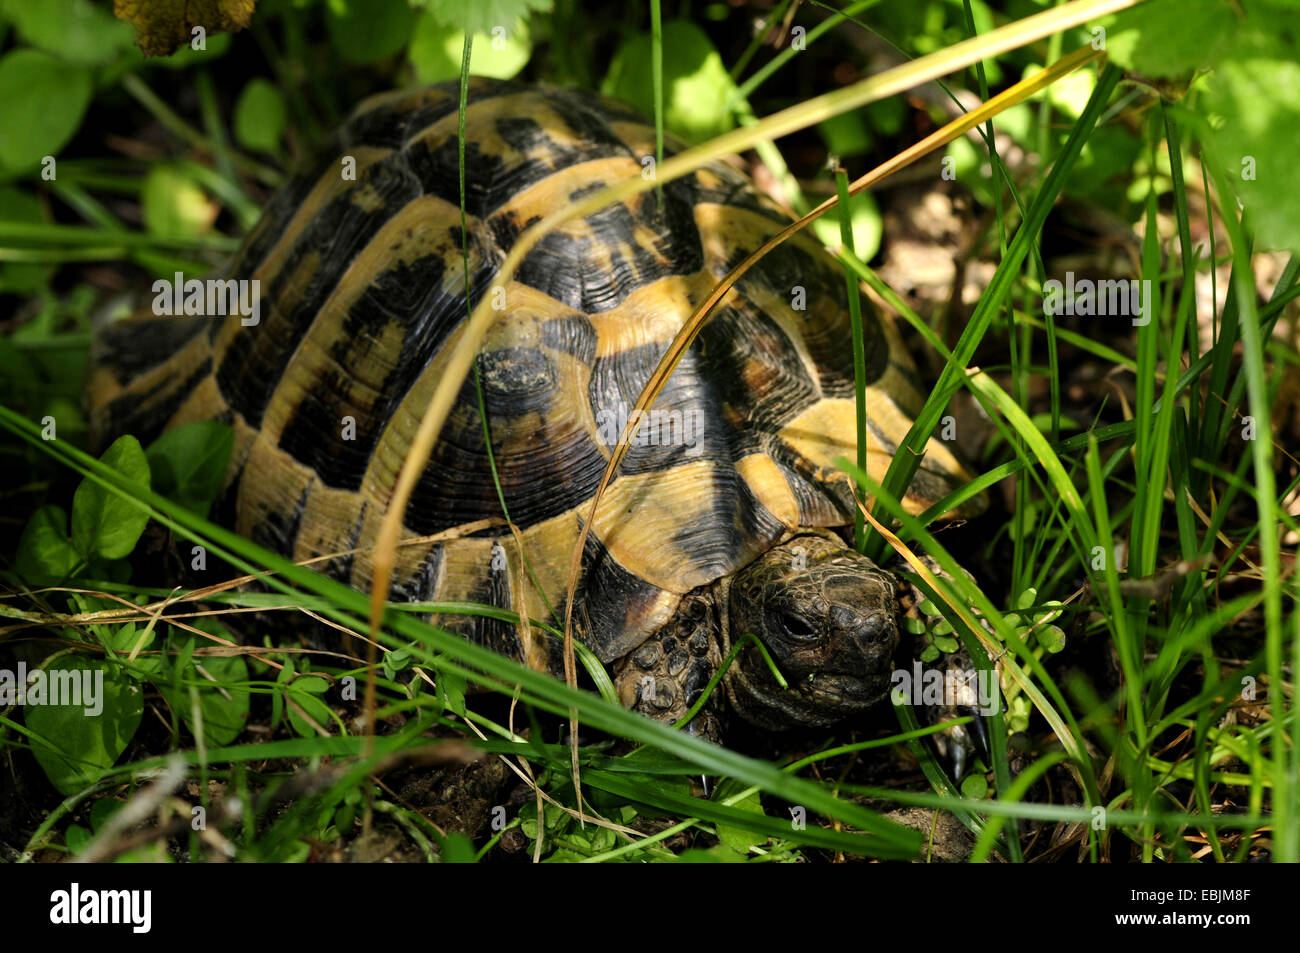 Hermanns Schildkröte, Griechische Schildkröte, Boettgers Schildkröte (Testudo Hermanni Boettgeri), verborgen unter einem Busch, Griechenland, Mazedonien Stockfoto